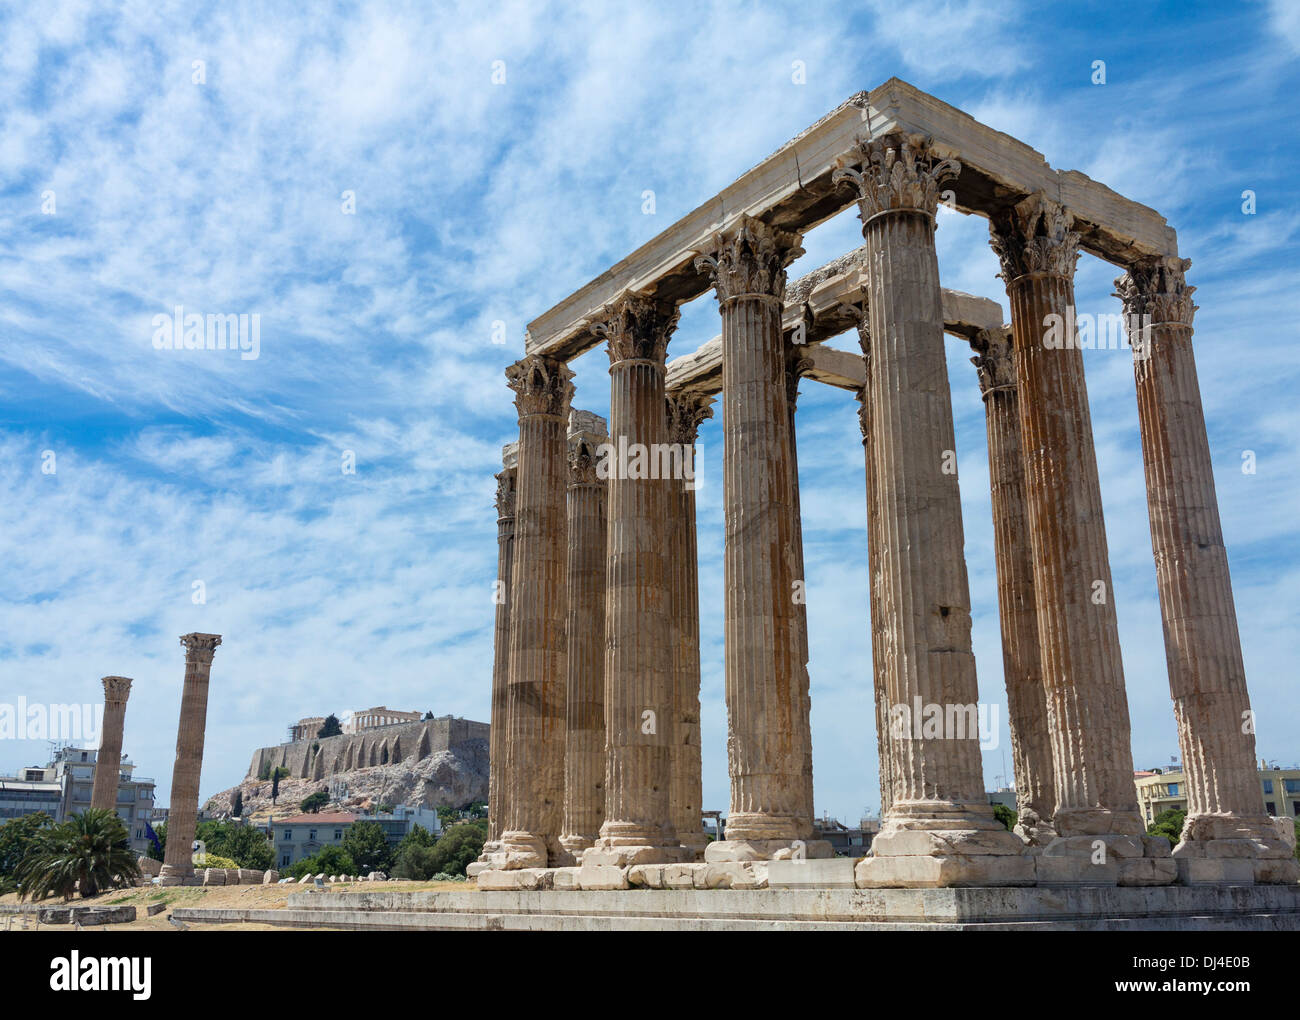 La antigua Grecia - El Templo de Zeus / Olympieion, Atenas, Grecia - con la Acrópolis detrás Foto de stock